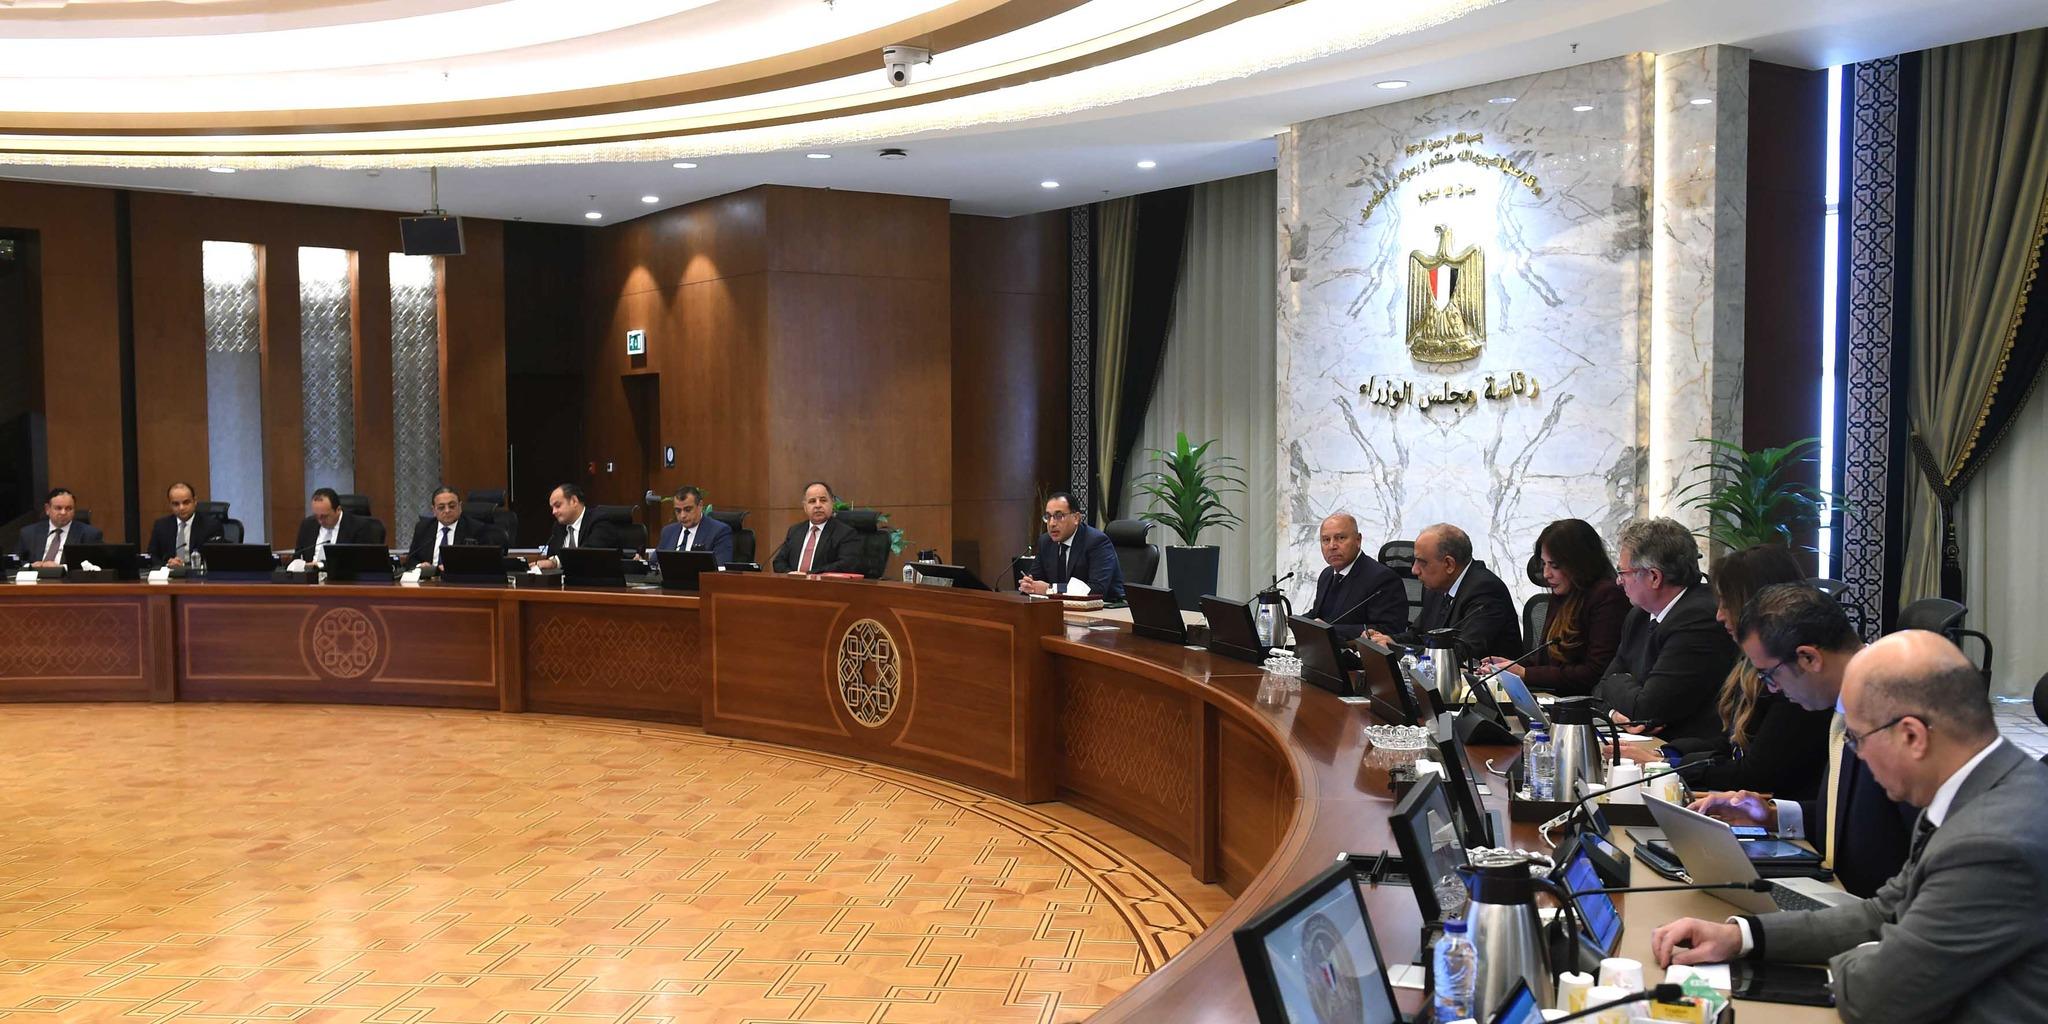 رئيس الوزراء المصري يكلف المجلس الأعلى لصناعة السيارات بتحويل السيارات للعمل بالكهرباء